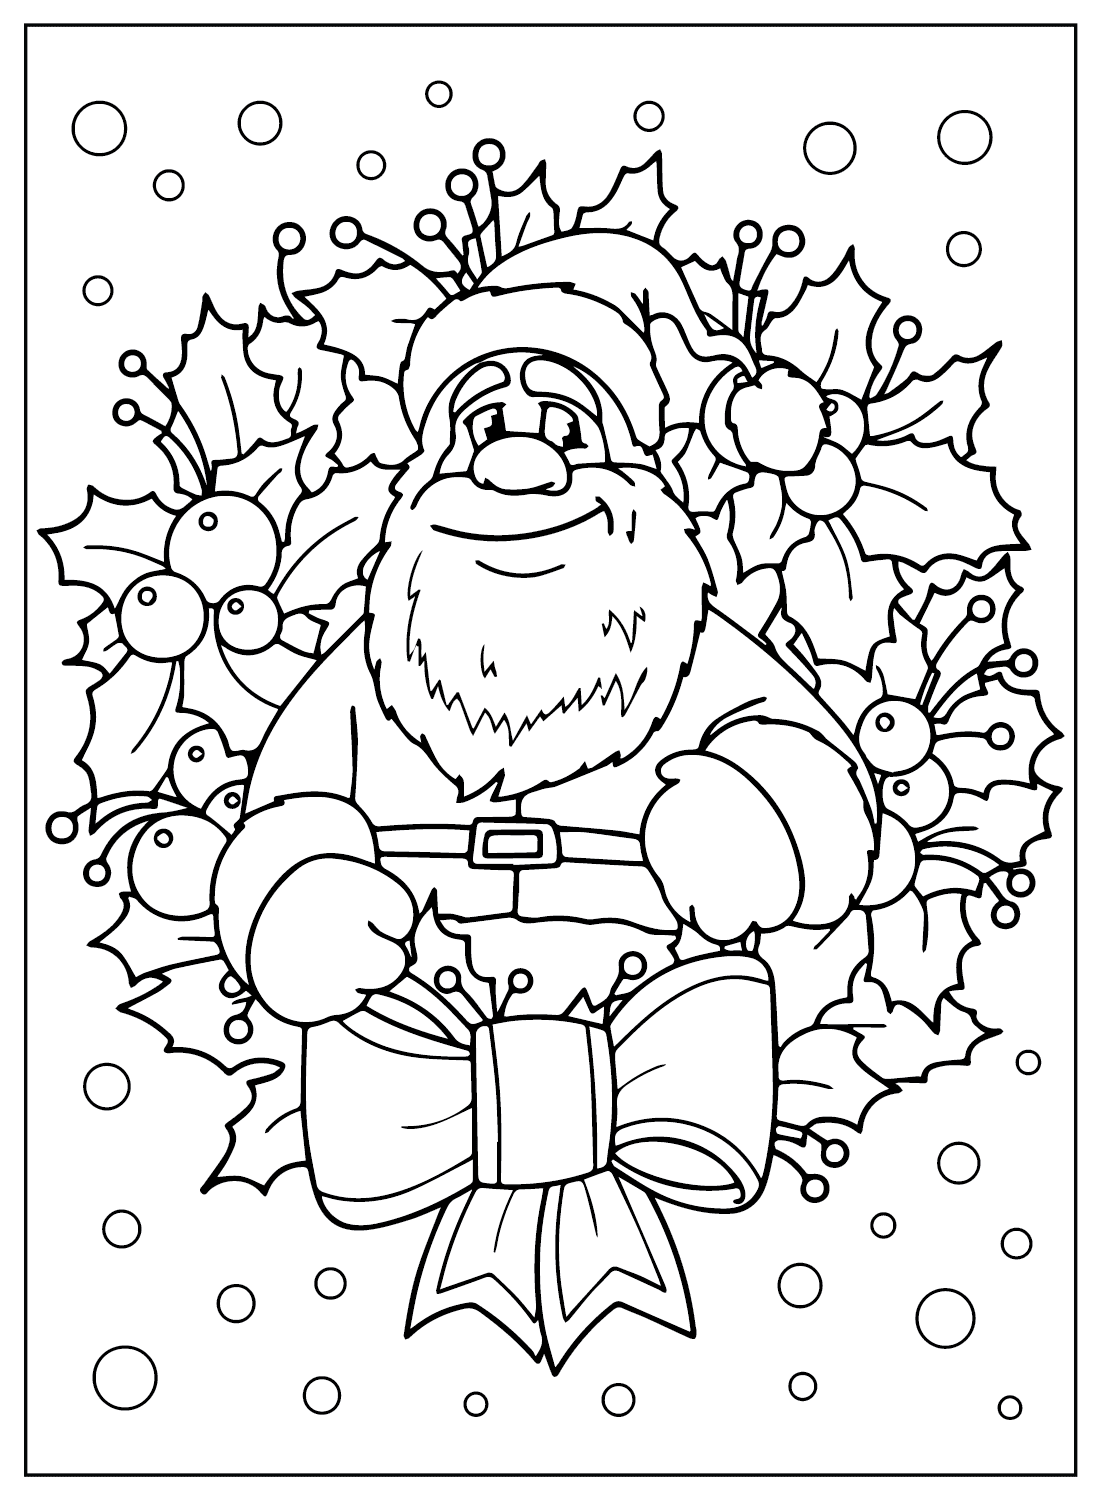 Бесплатная распечатка раскраски Санта-Клауса от Санта-Клауса